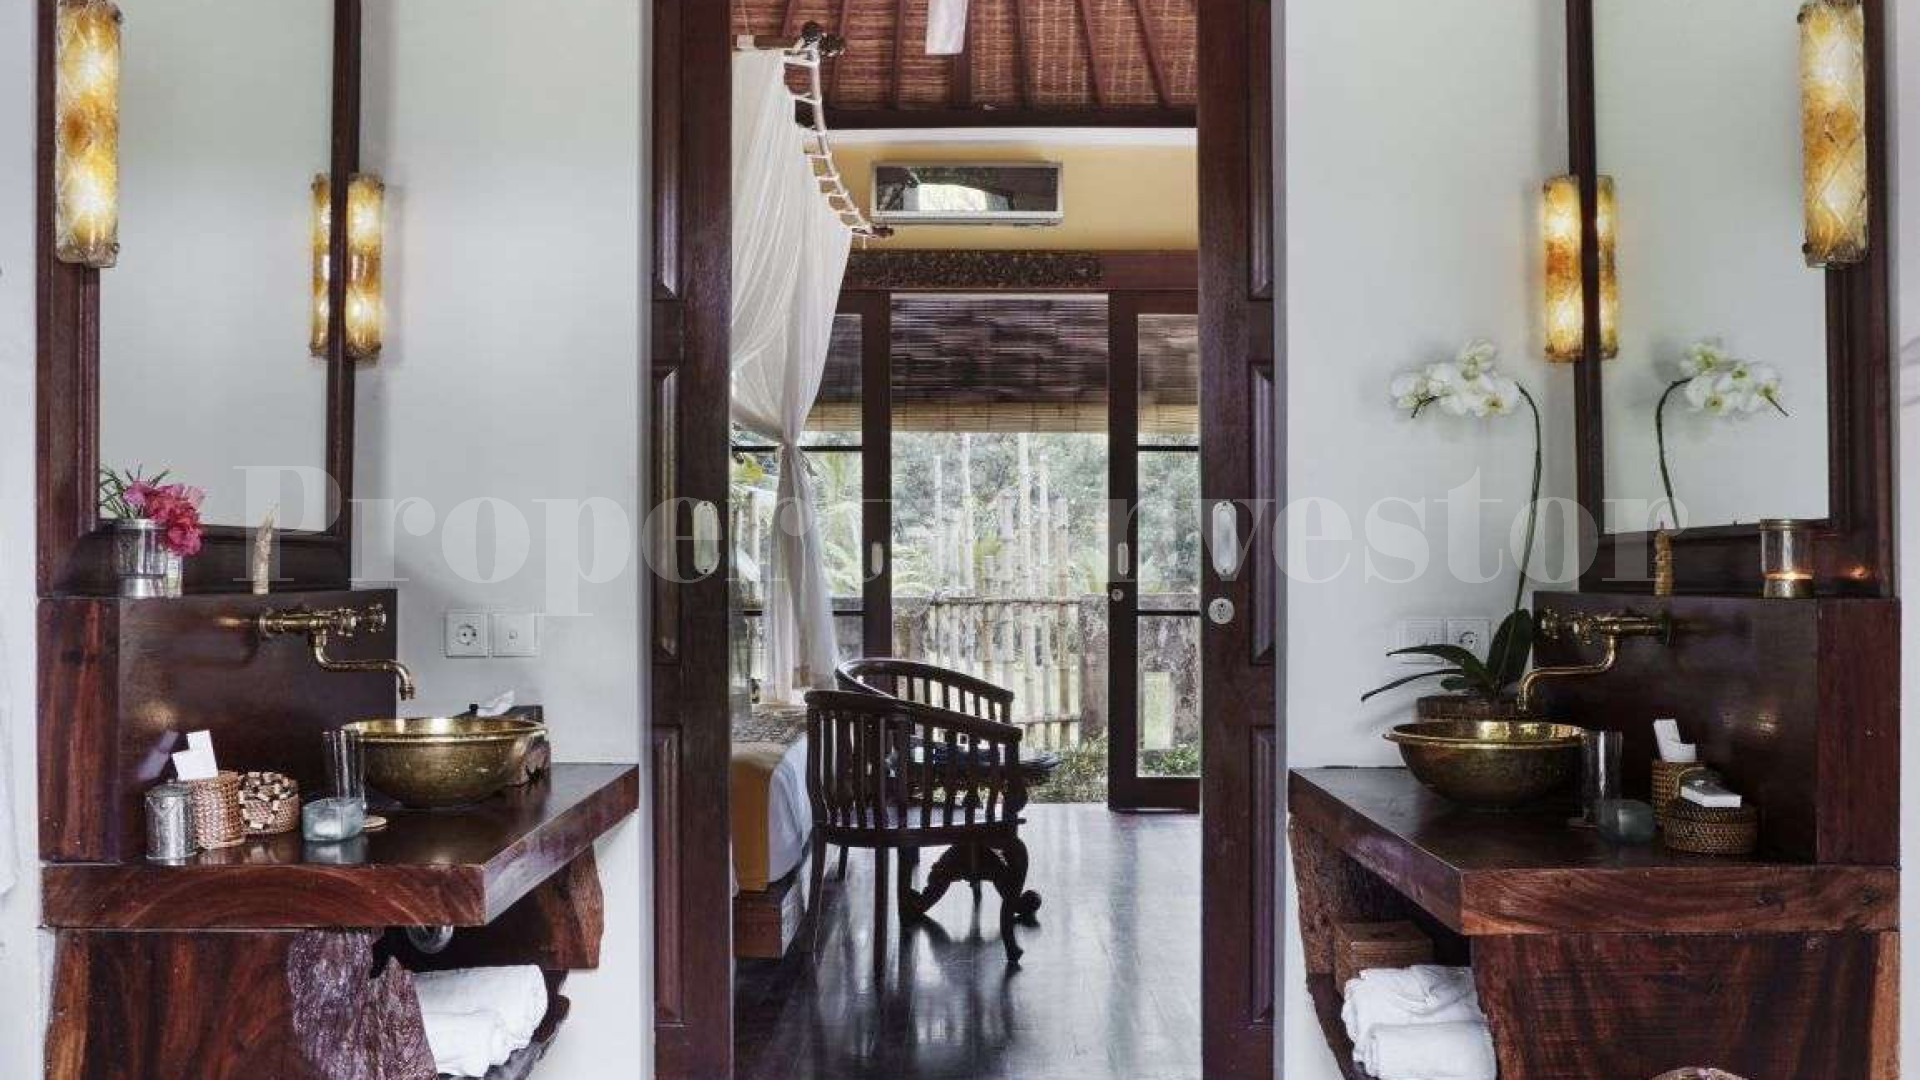 Элегантная роскошная вилла на 4 спальни в традиционном балийском стиле в северном Убуде, Бали